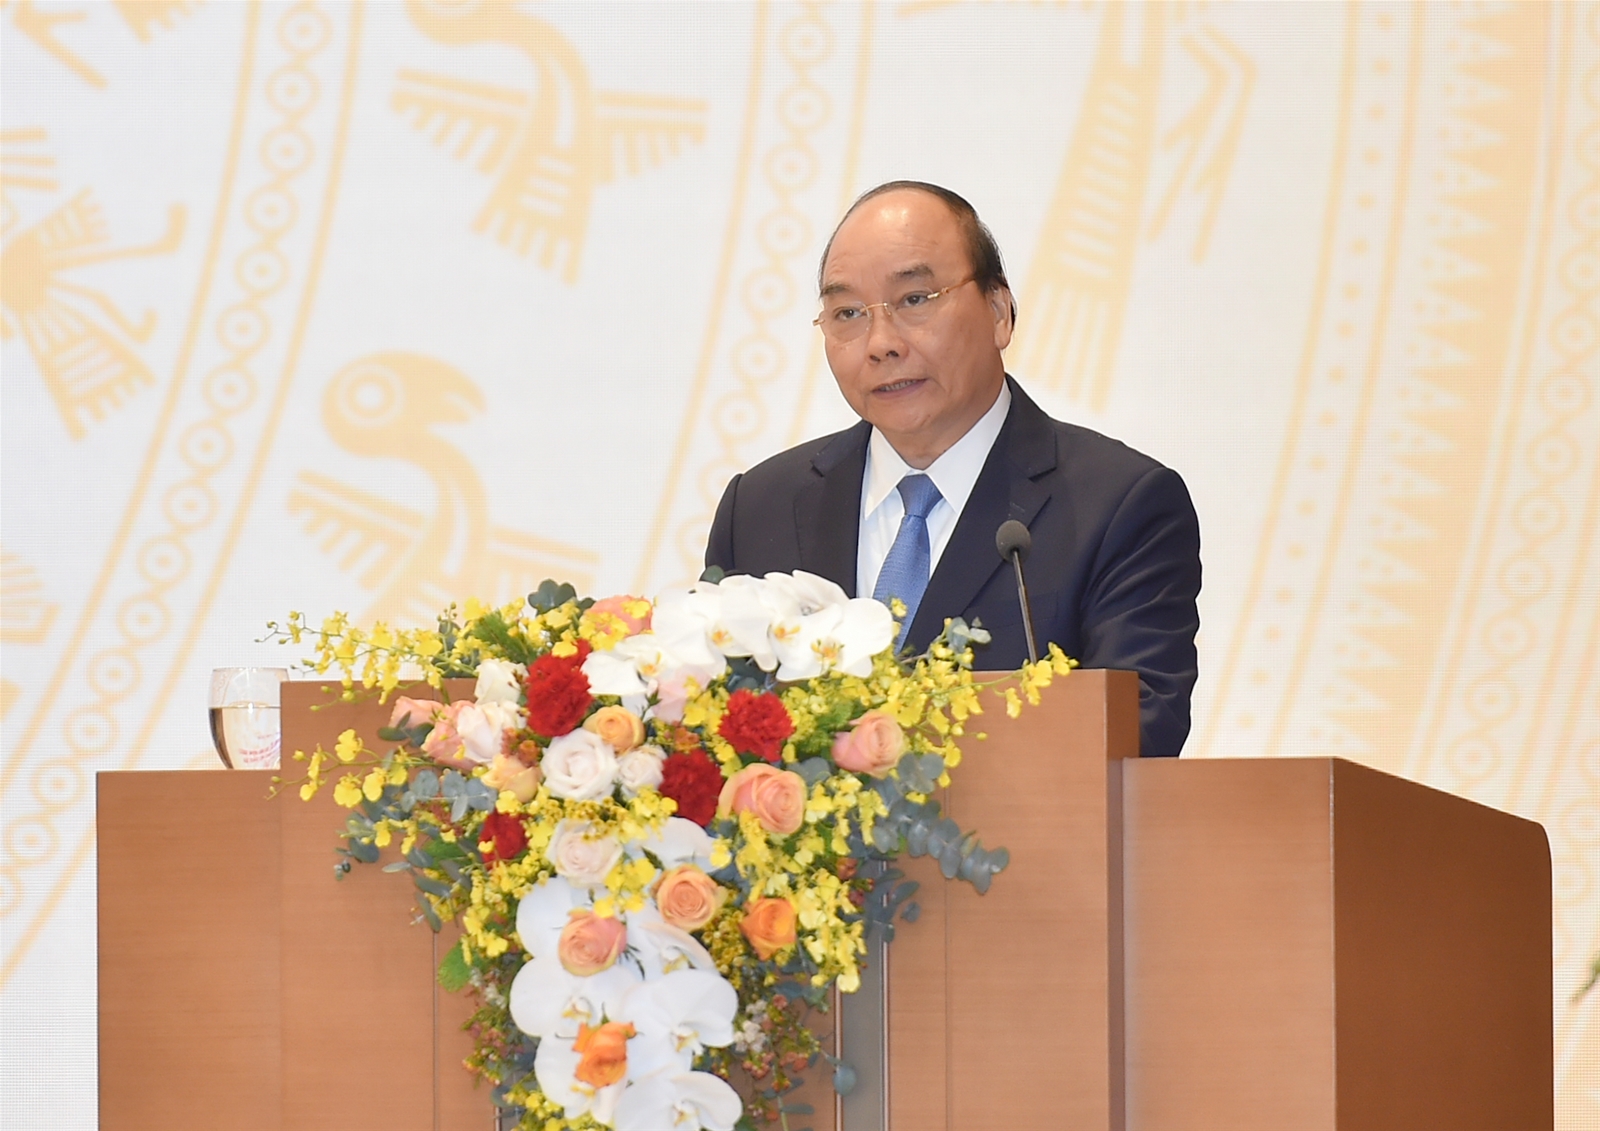 Thủ tướng Nguyễn Xuân Phúc phát biểu kết luận Hội nghị. (Nguồn ảnh: Quang Hiếu - Báo Chính phủ)